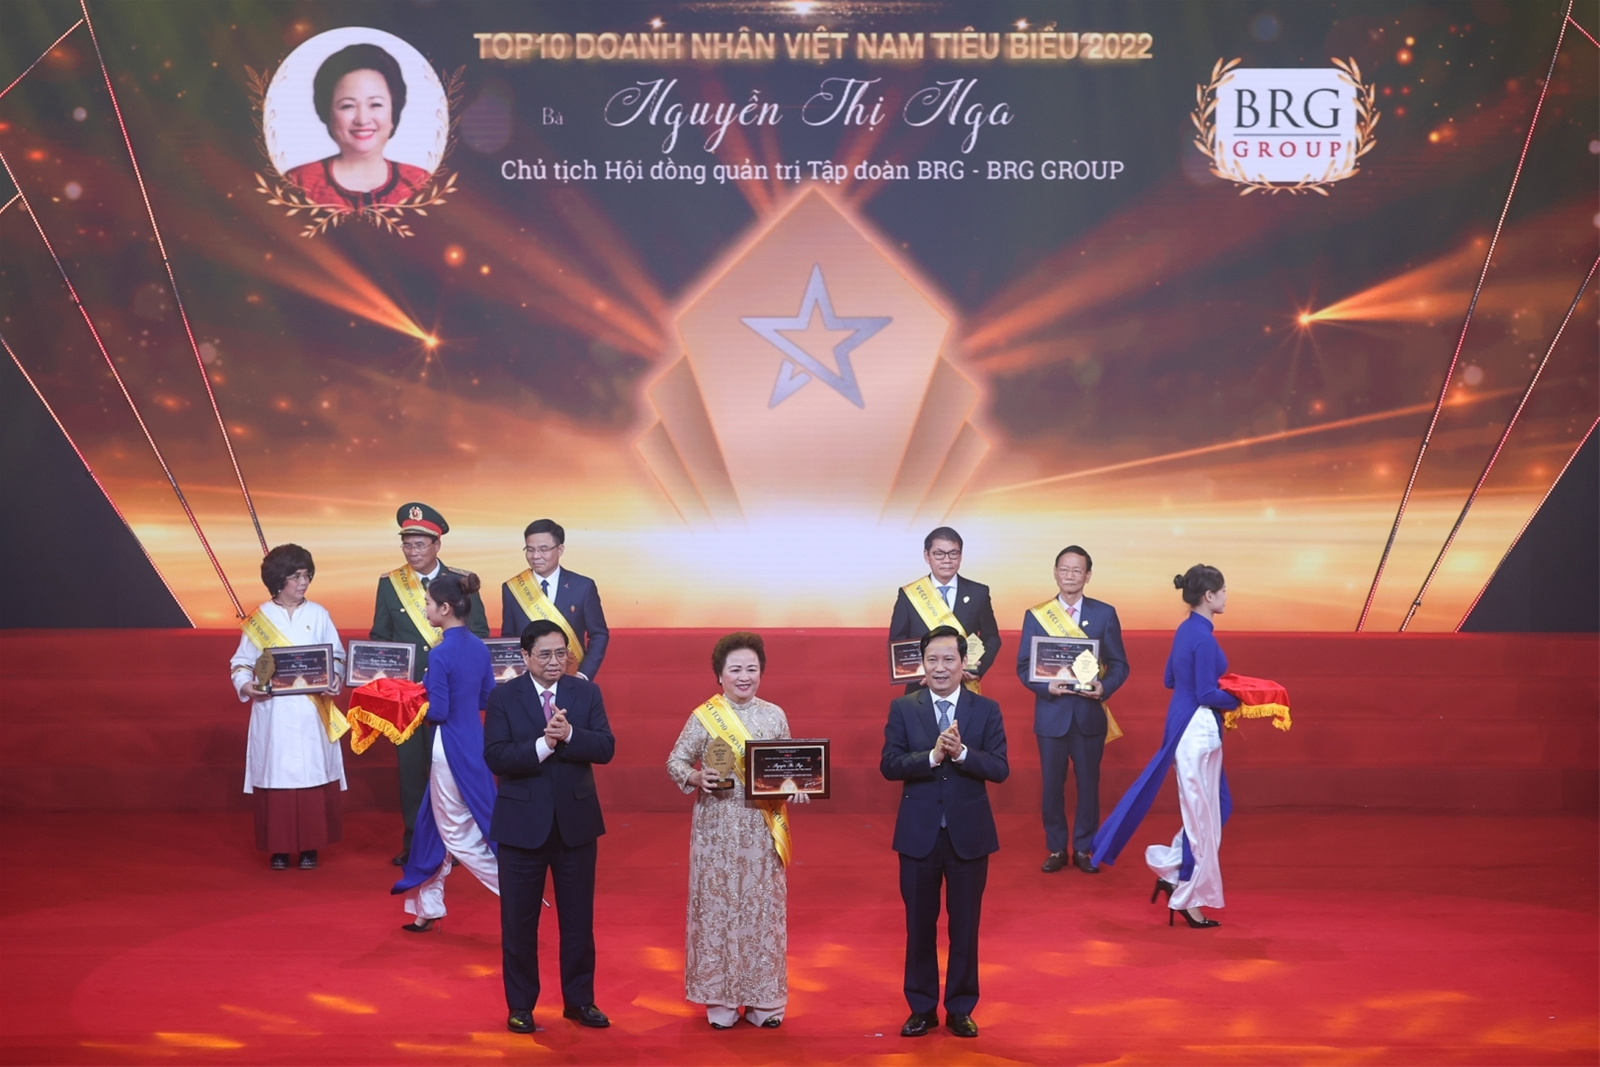 Chủ tịch Tập đoàn BRG nhận danh hiệu "Top 10 Doanh nhân tiêu biểu nhất Việt Nam năm 2022"